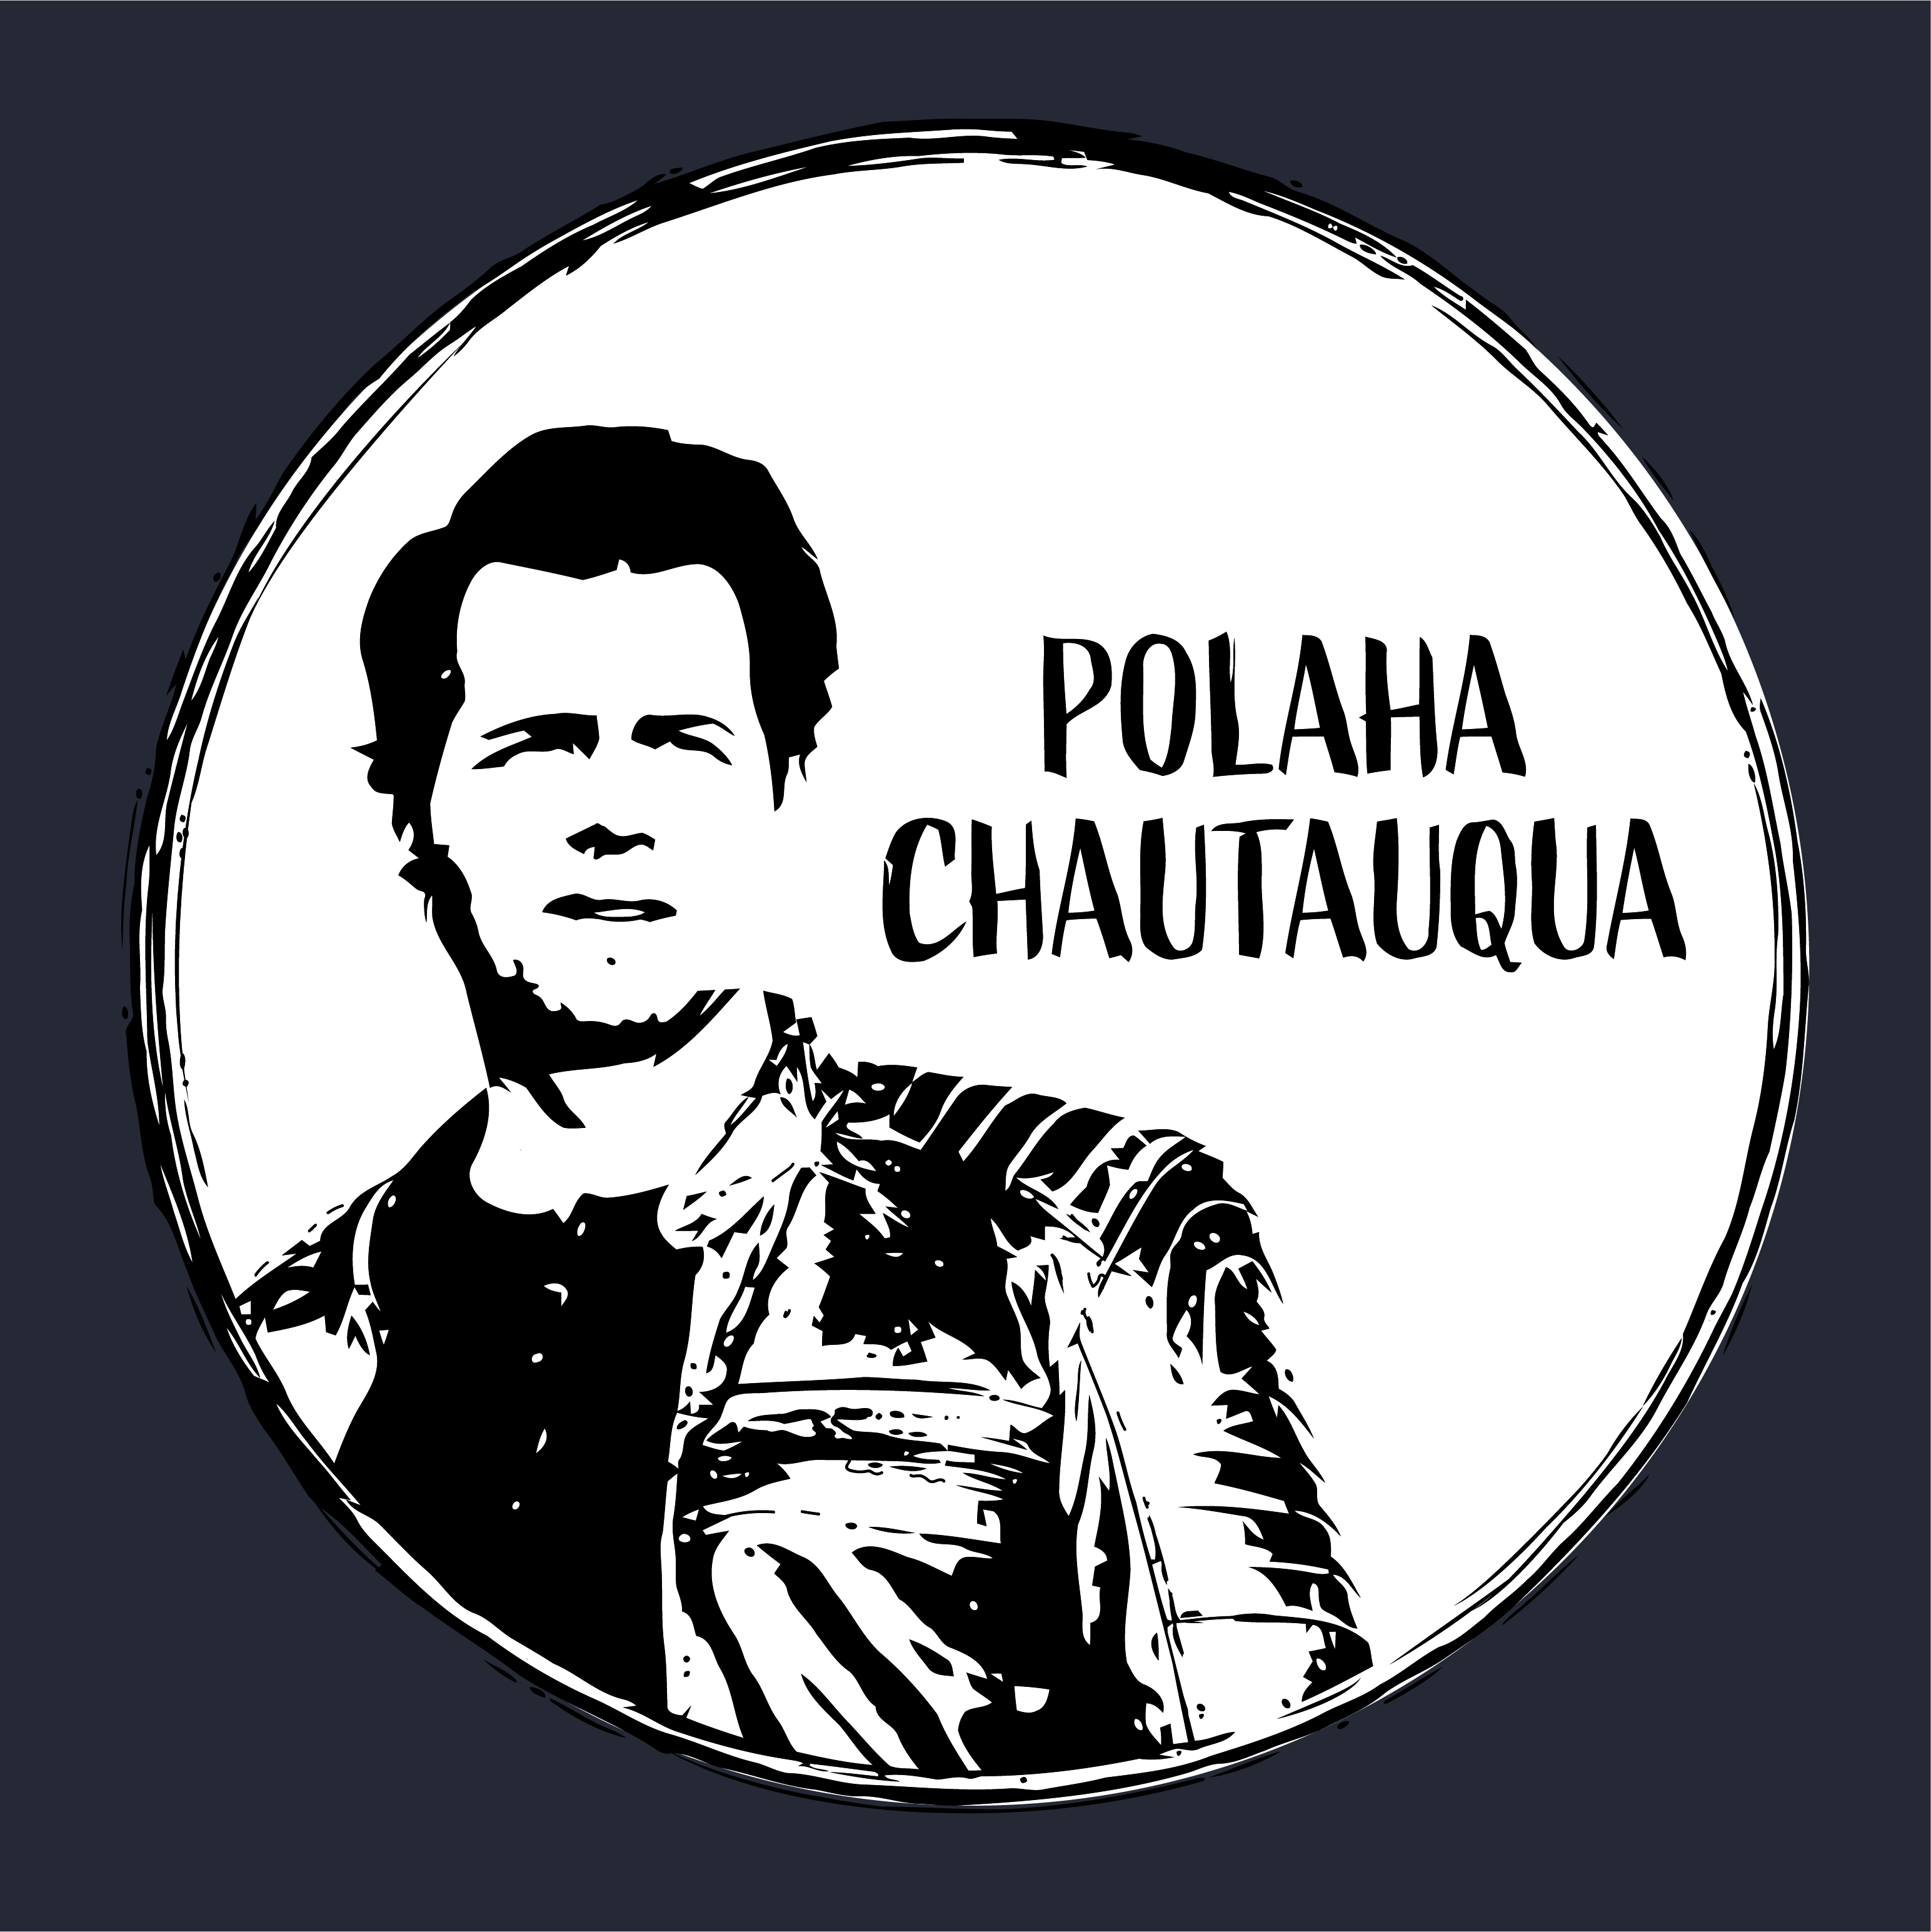 The Polaha Chautauqua - Portrait shirt design - zoomed